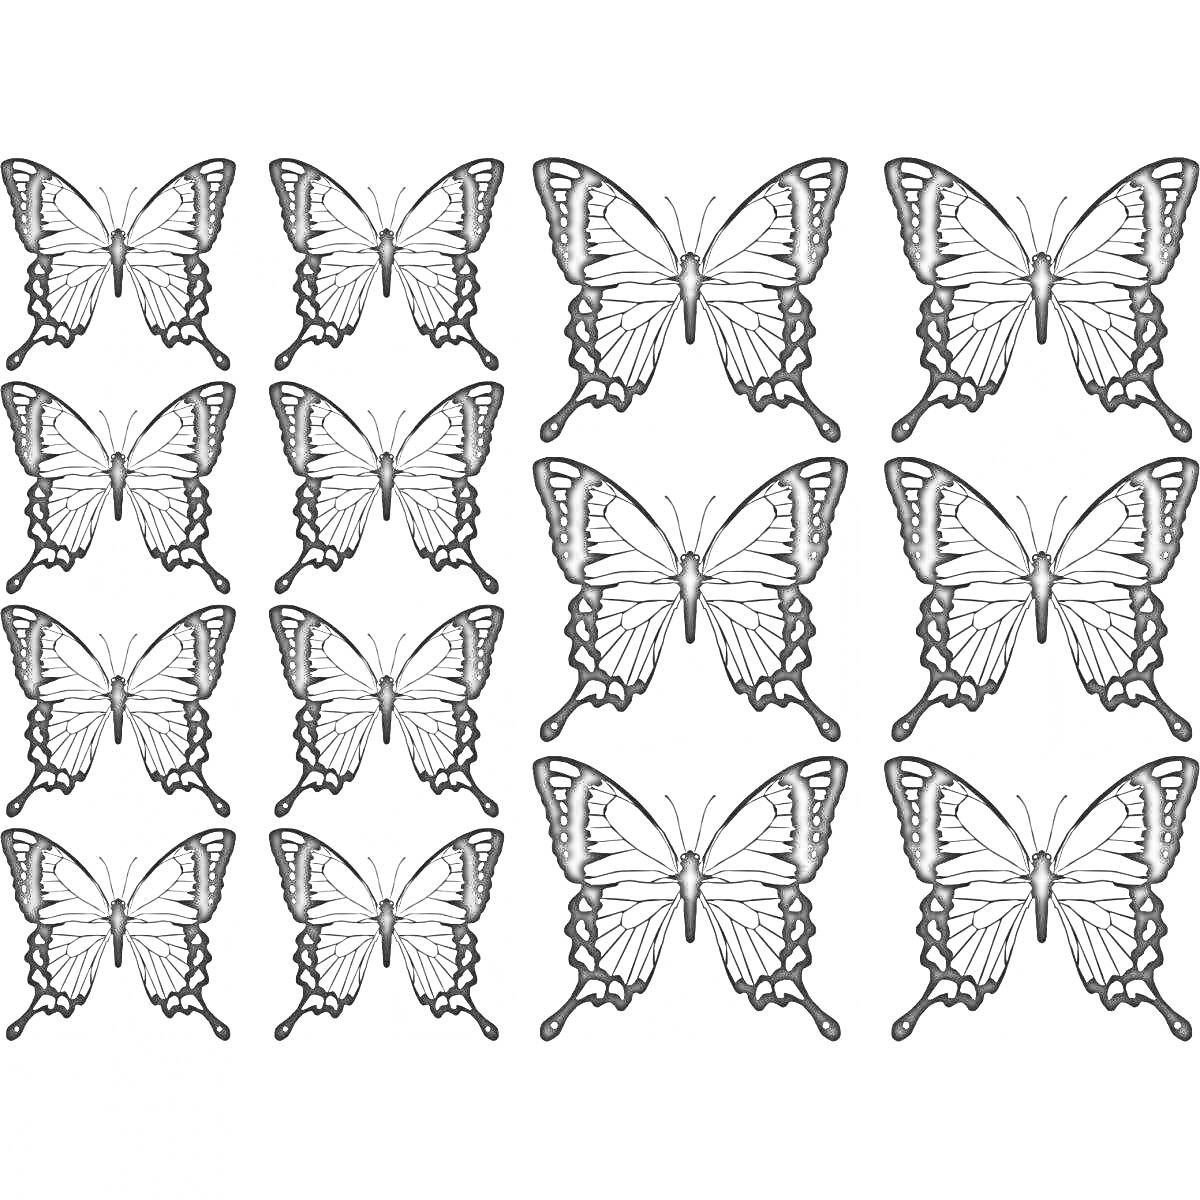 Раскраска маленькие бабочки, много, раскраска, шесть рядов по три бабочки, черно-белые